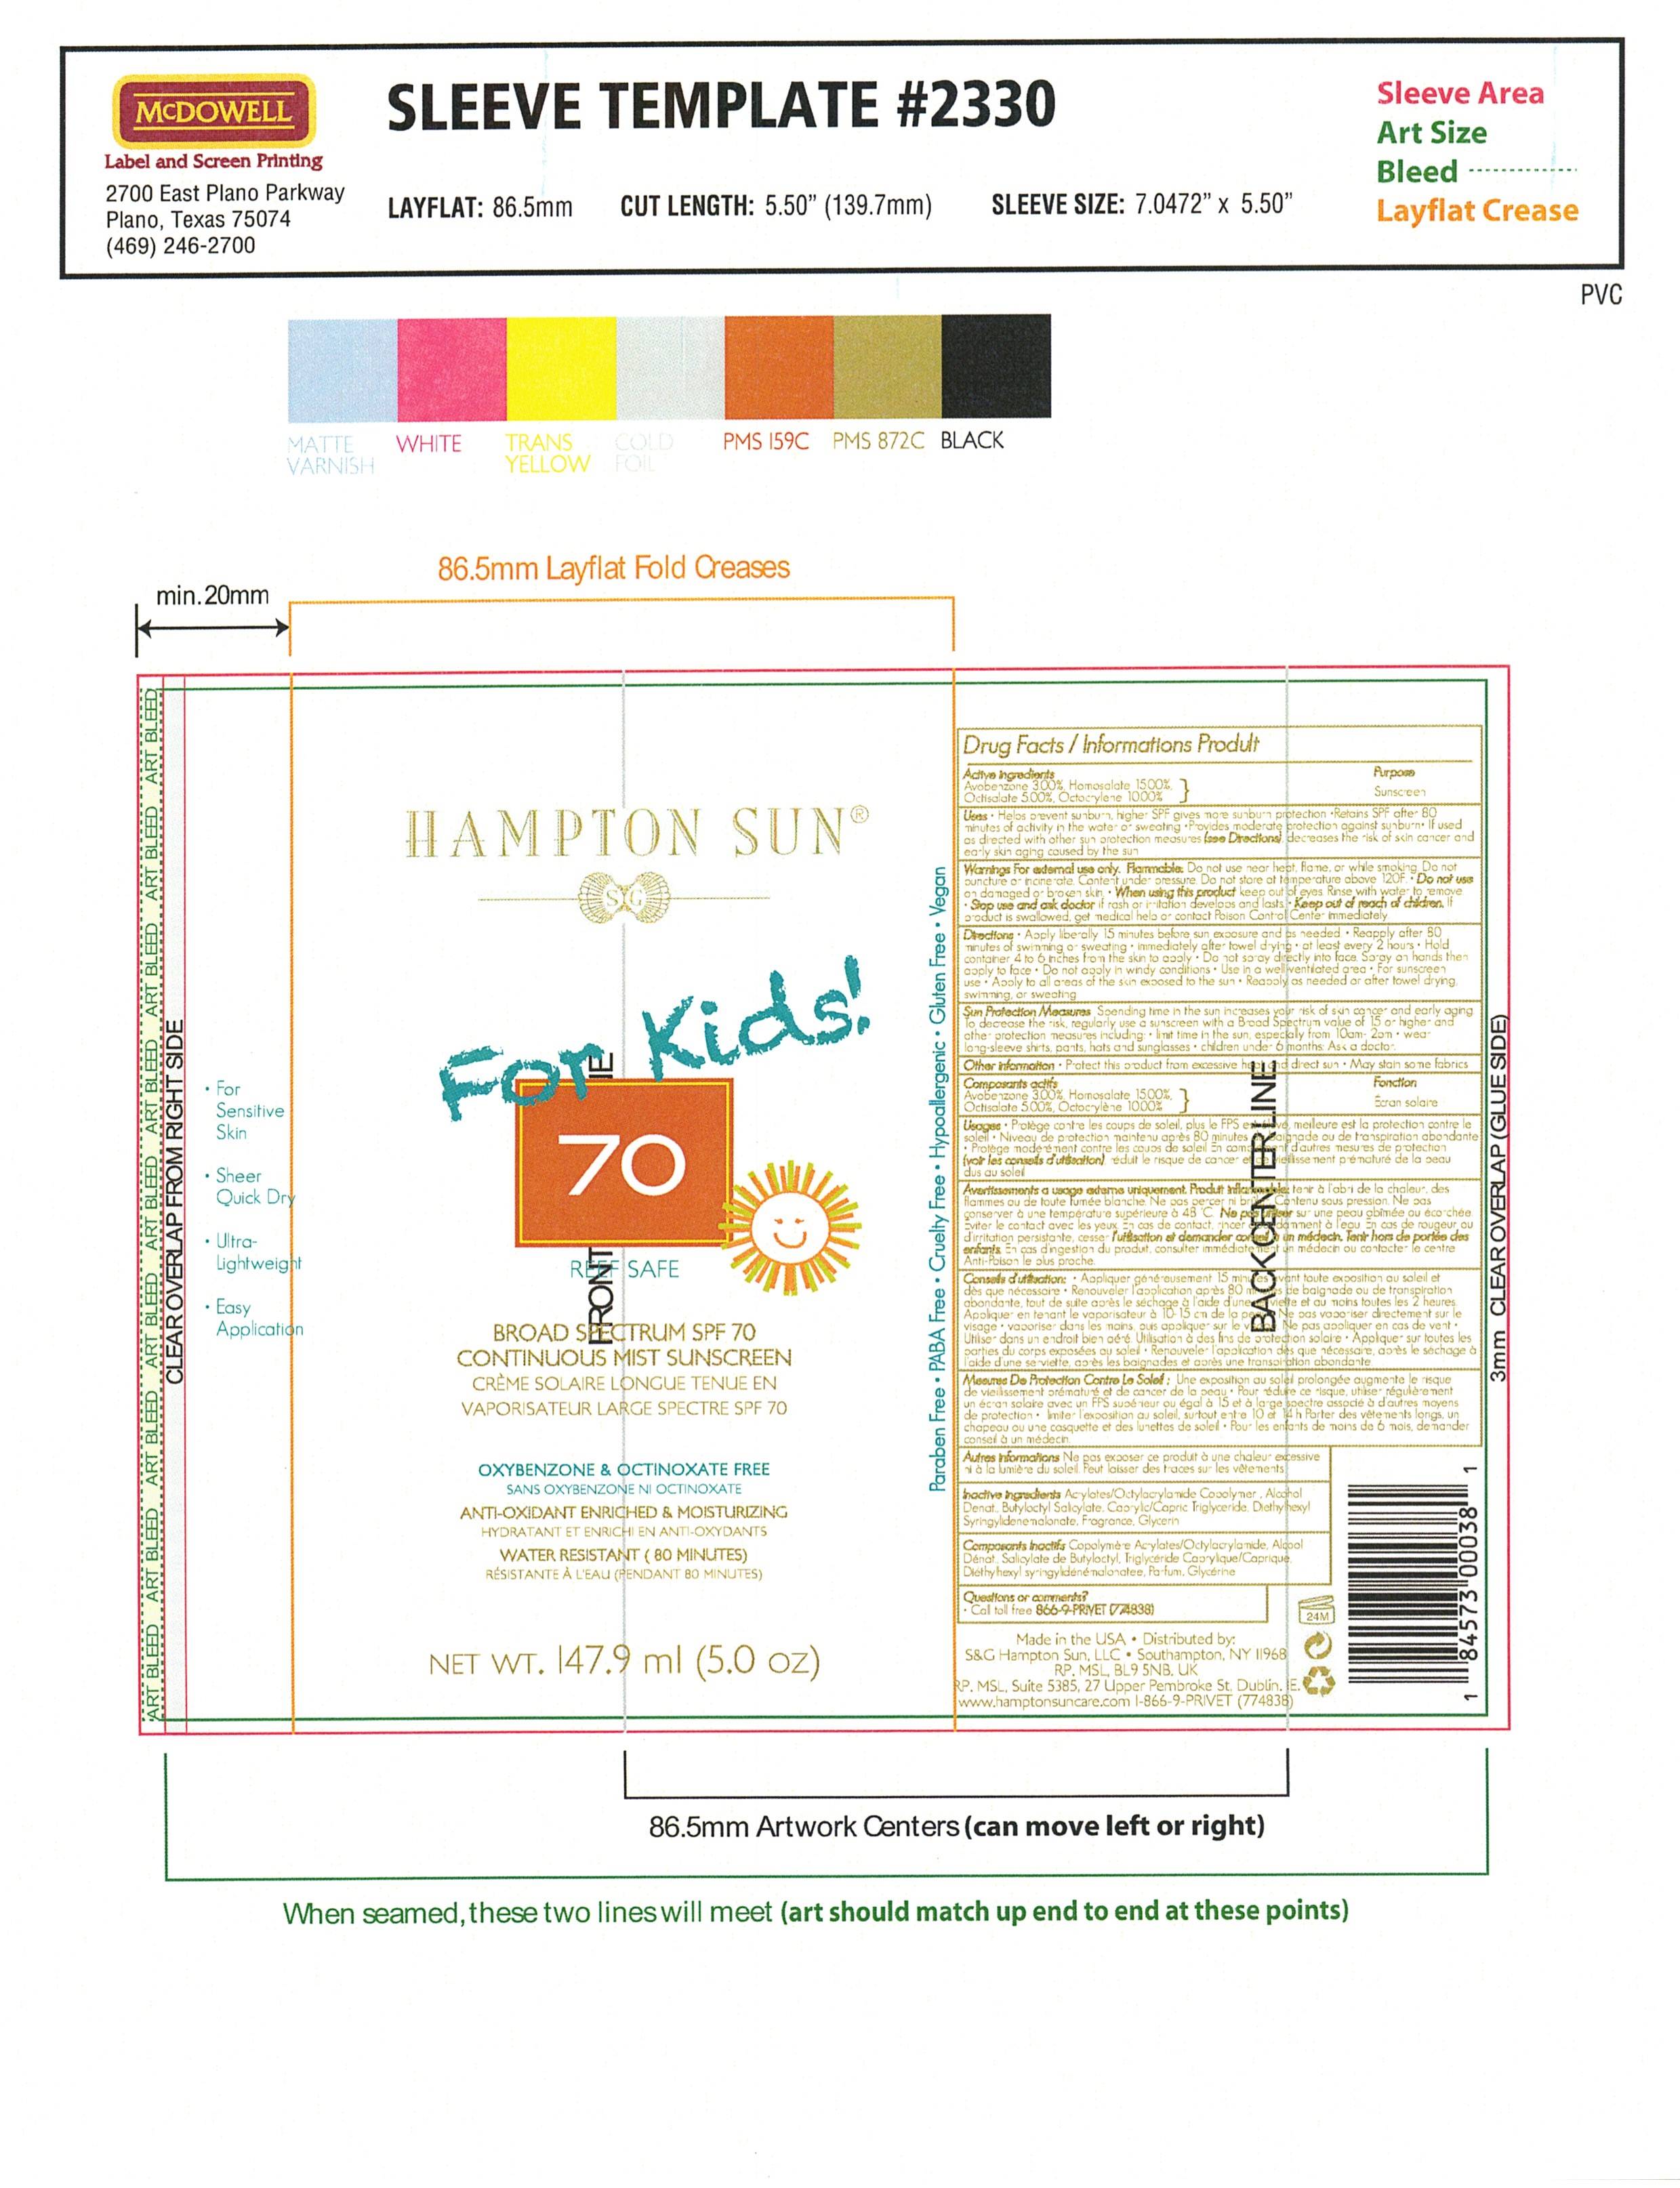 Hampton Sun SPF 70 Sunscreen